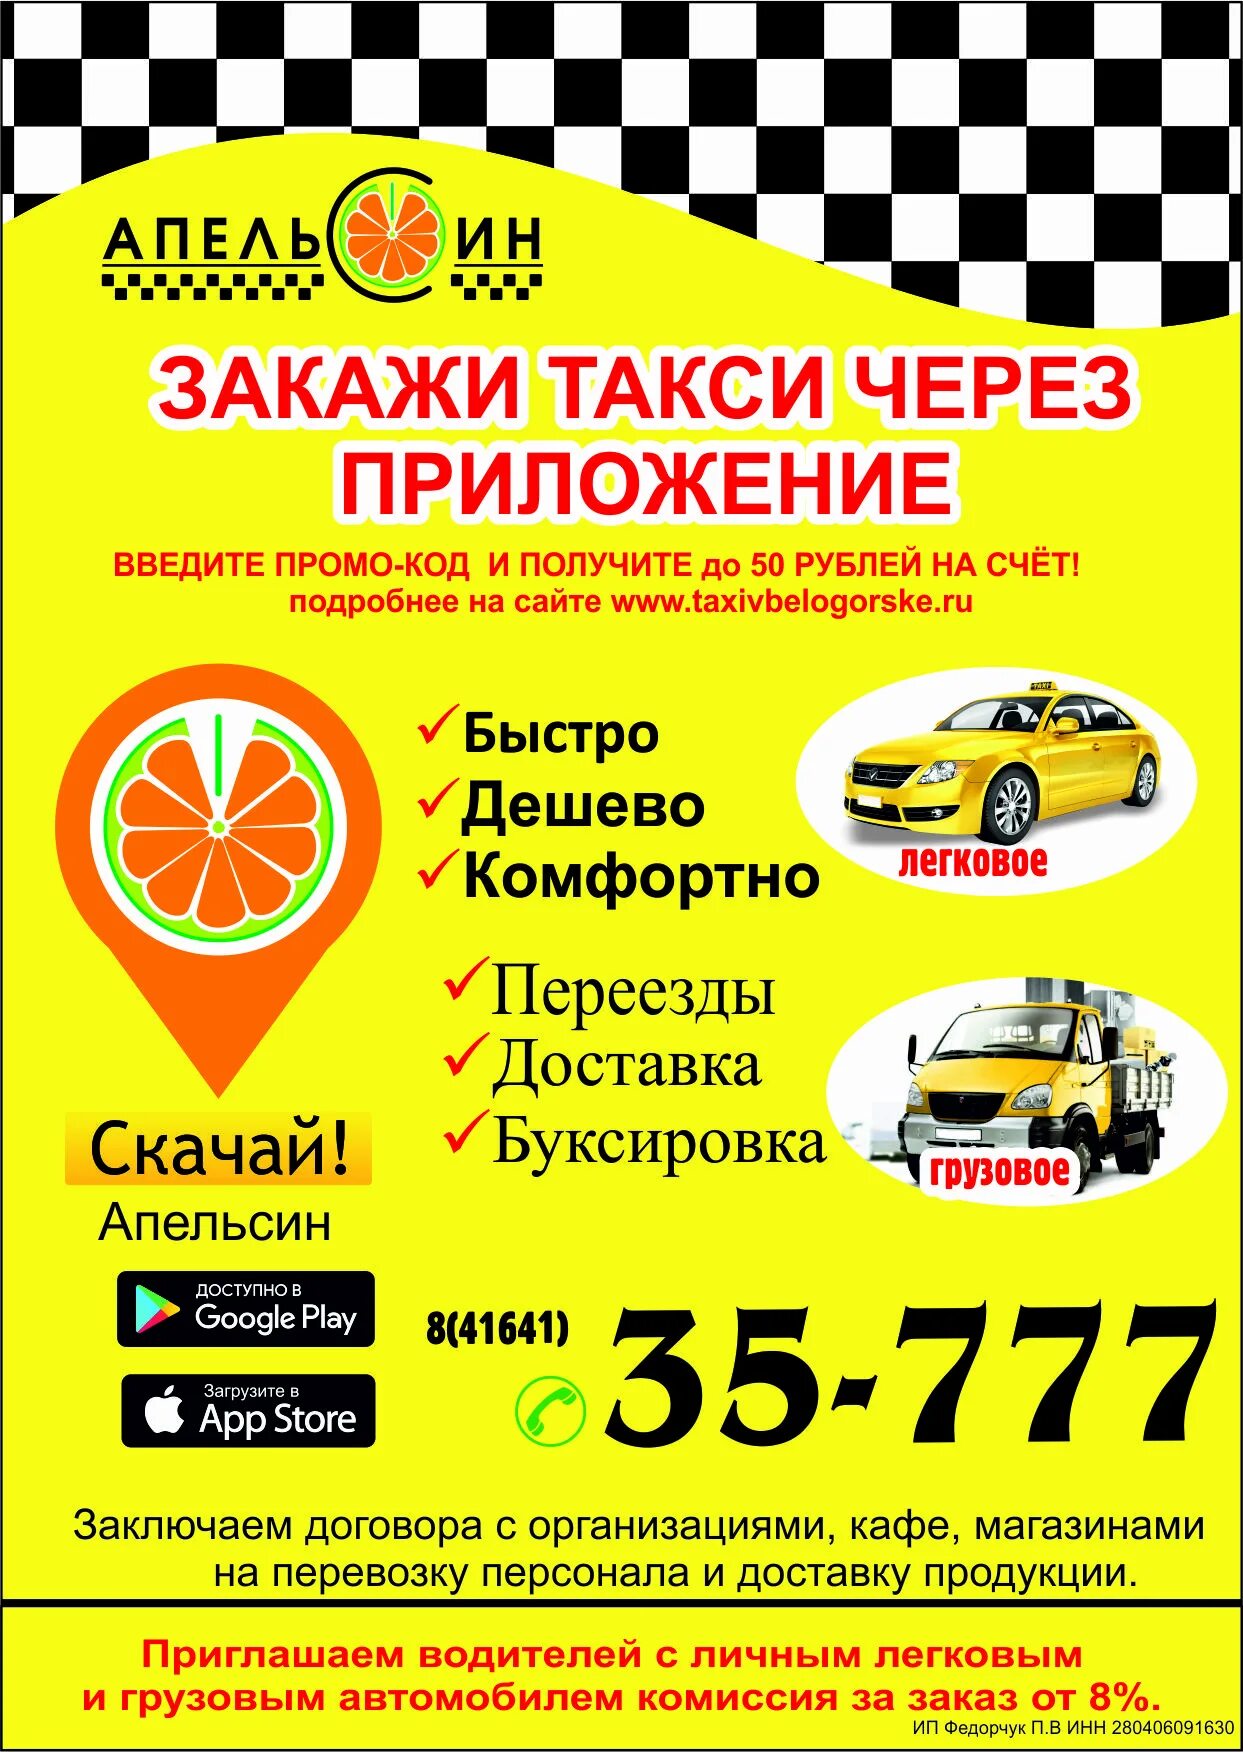 Такси белогорск телефоны. Закажи такси. Такси заказать. Такси доставка. Такси через о.